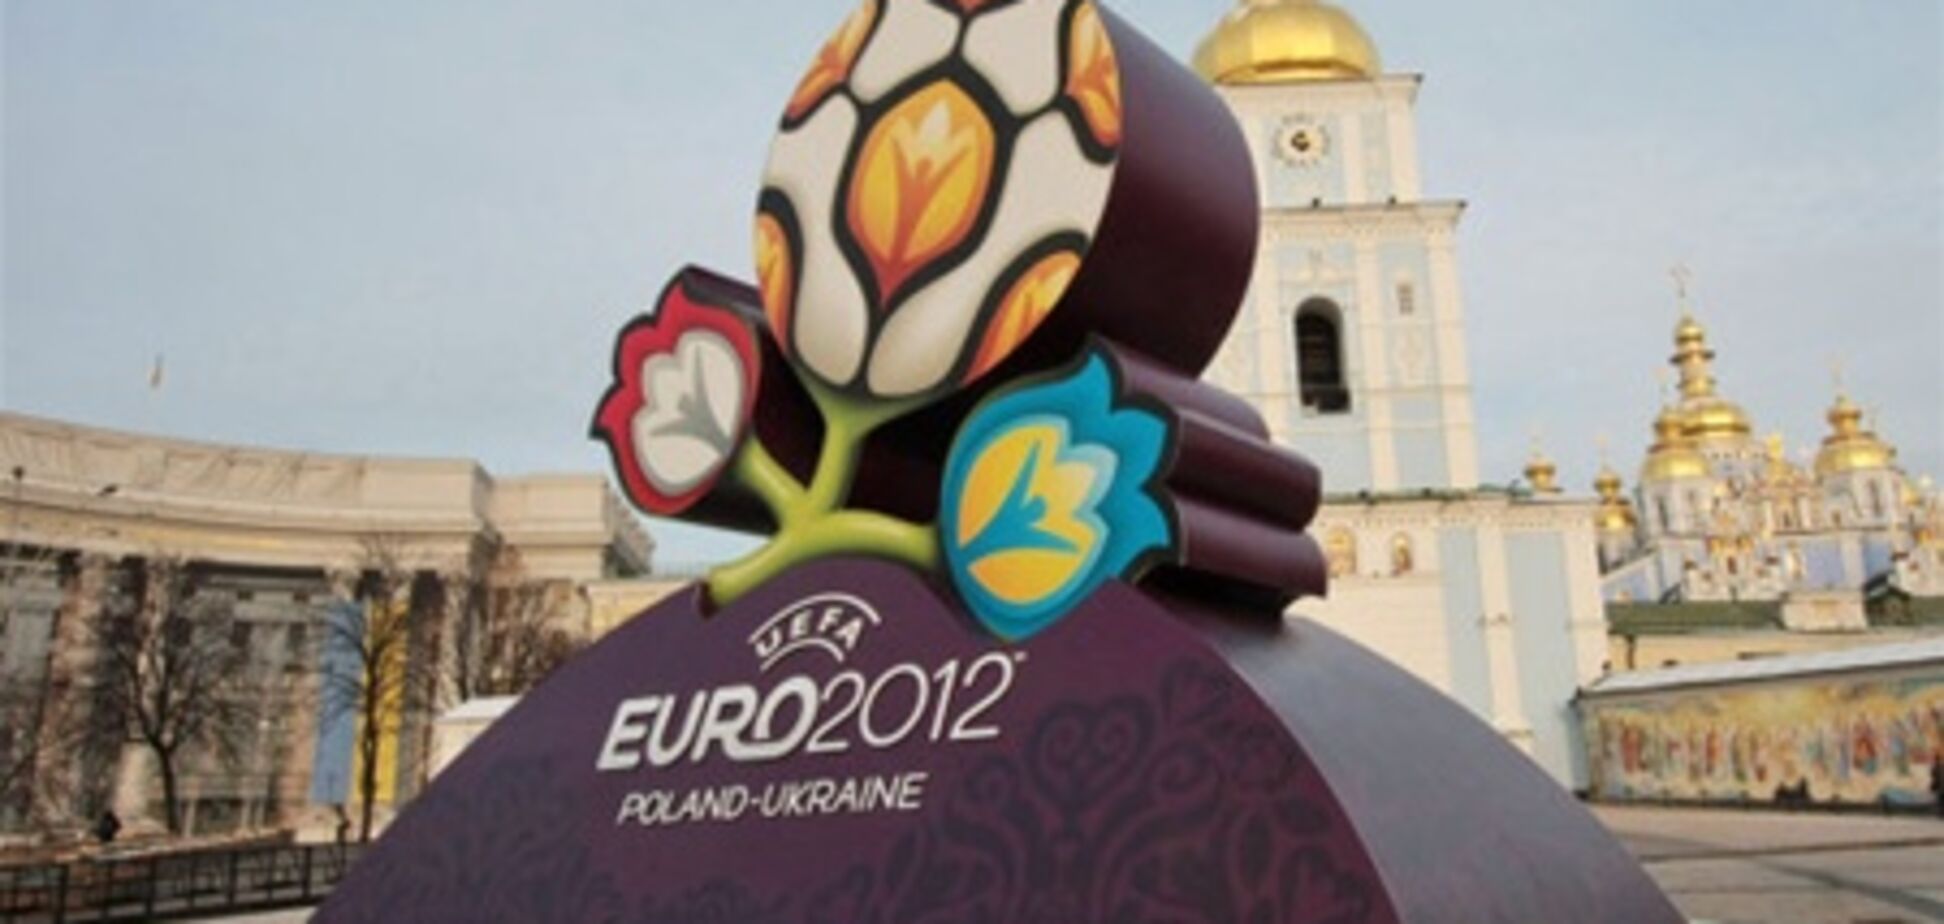 Фанатам Евро-2012 предложат общаги и палатки: все гостиницы - забронированы